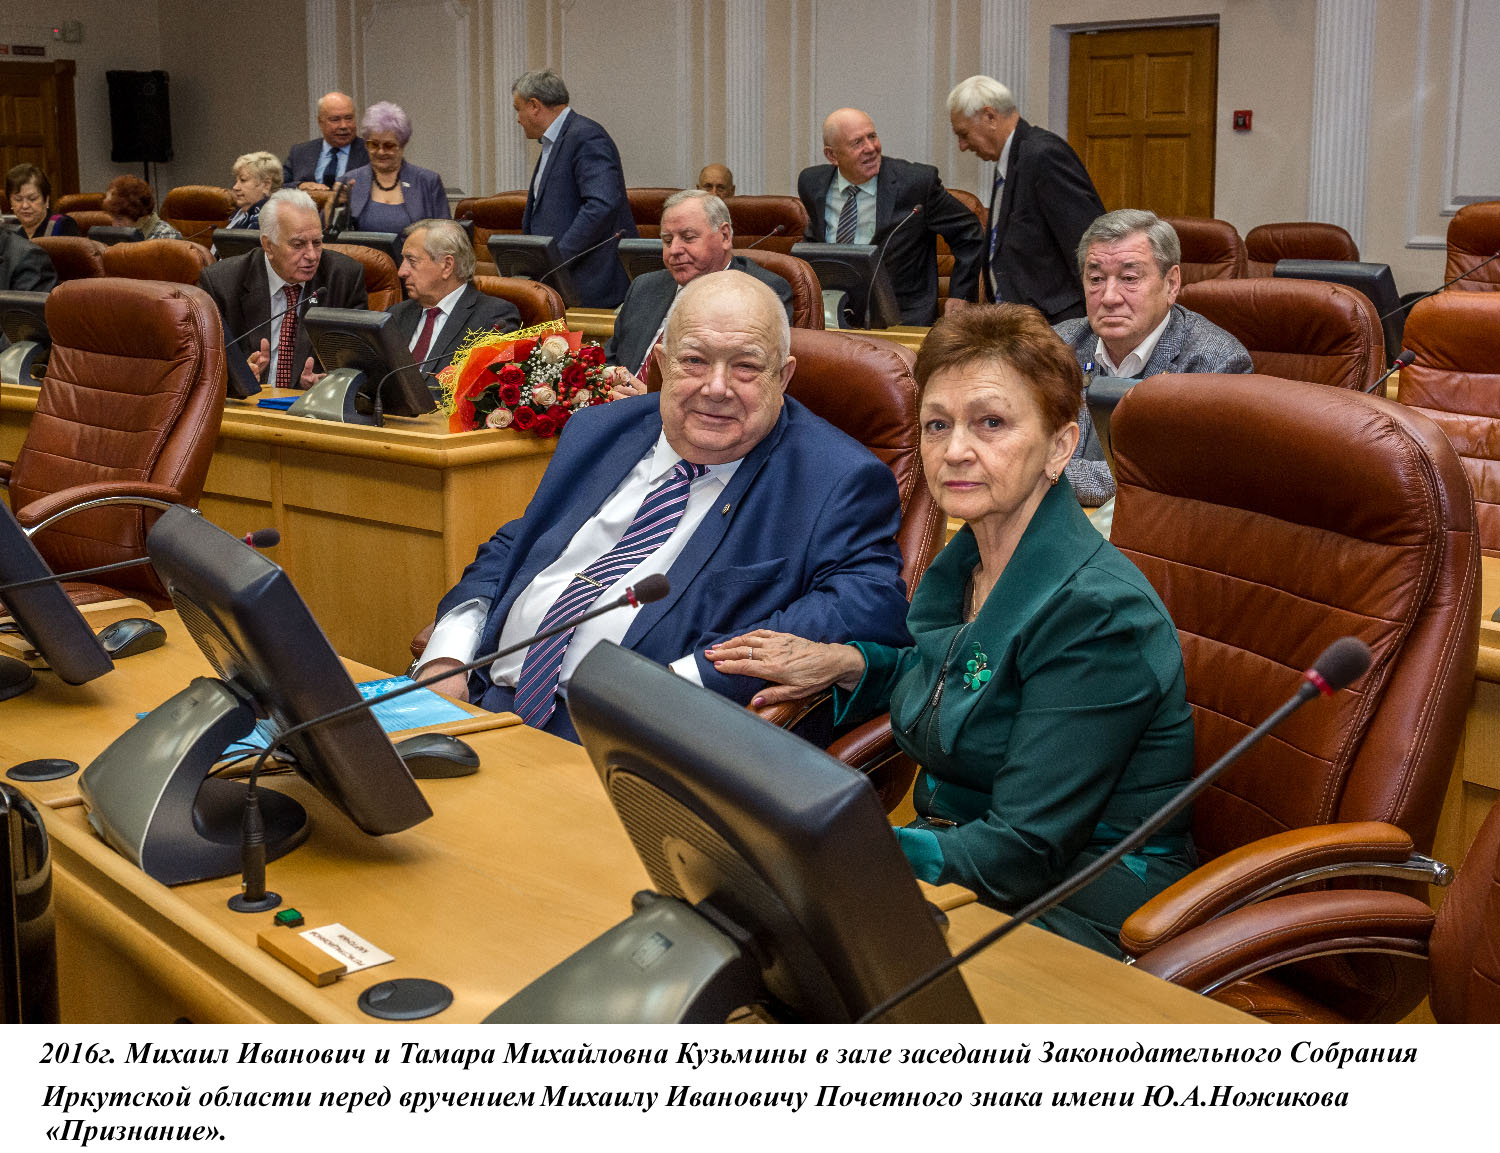 20 июня 2018 года исполняется 80 лет действительному члену РАН Михаилу Ивановичу Кузьмину